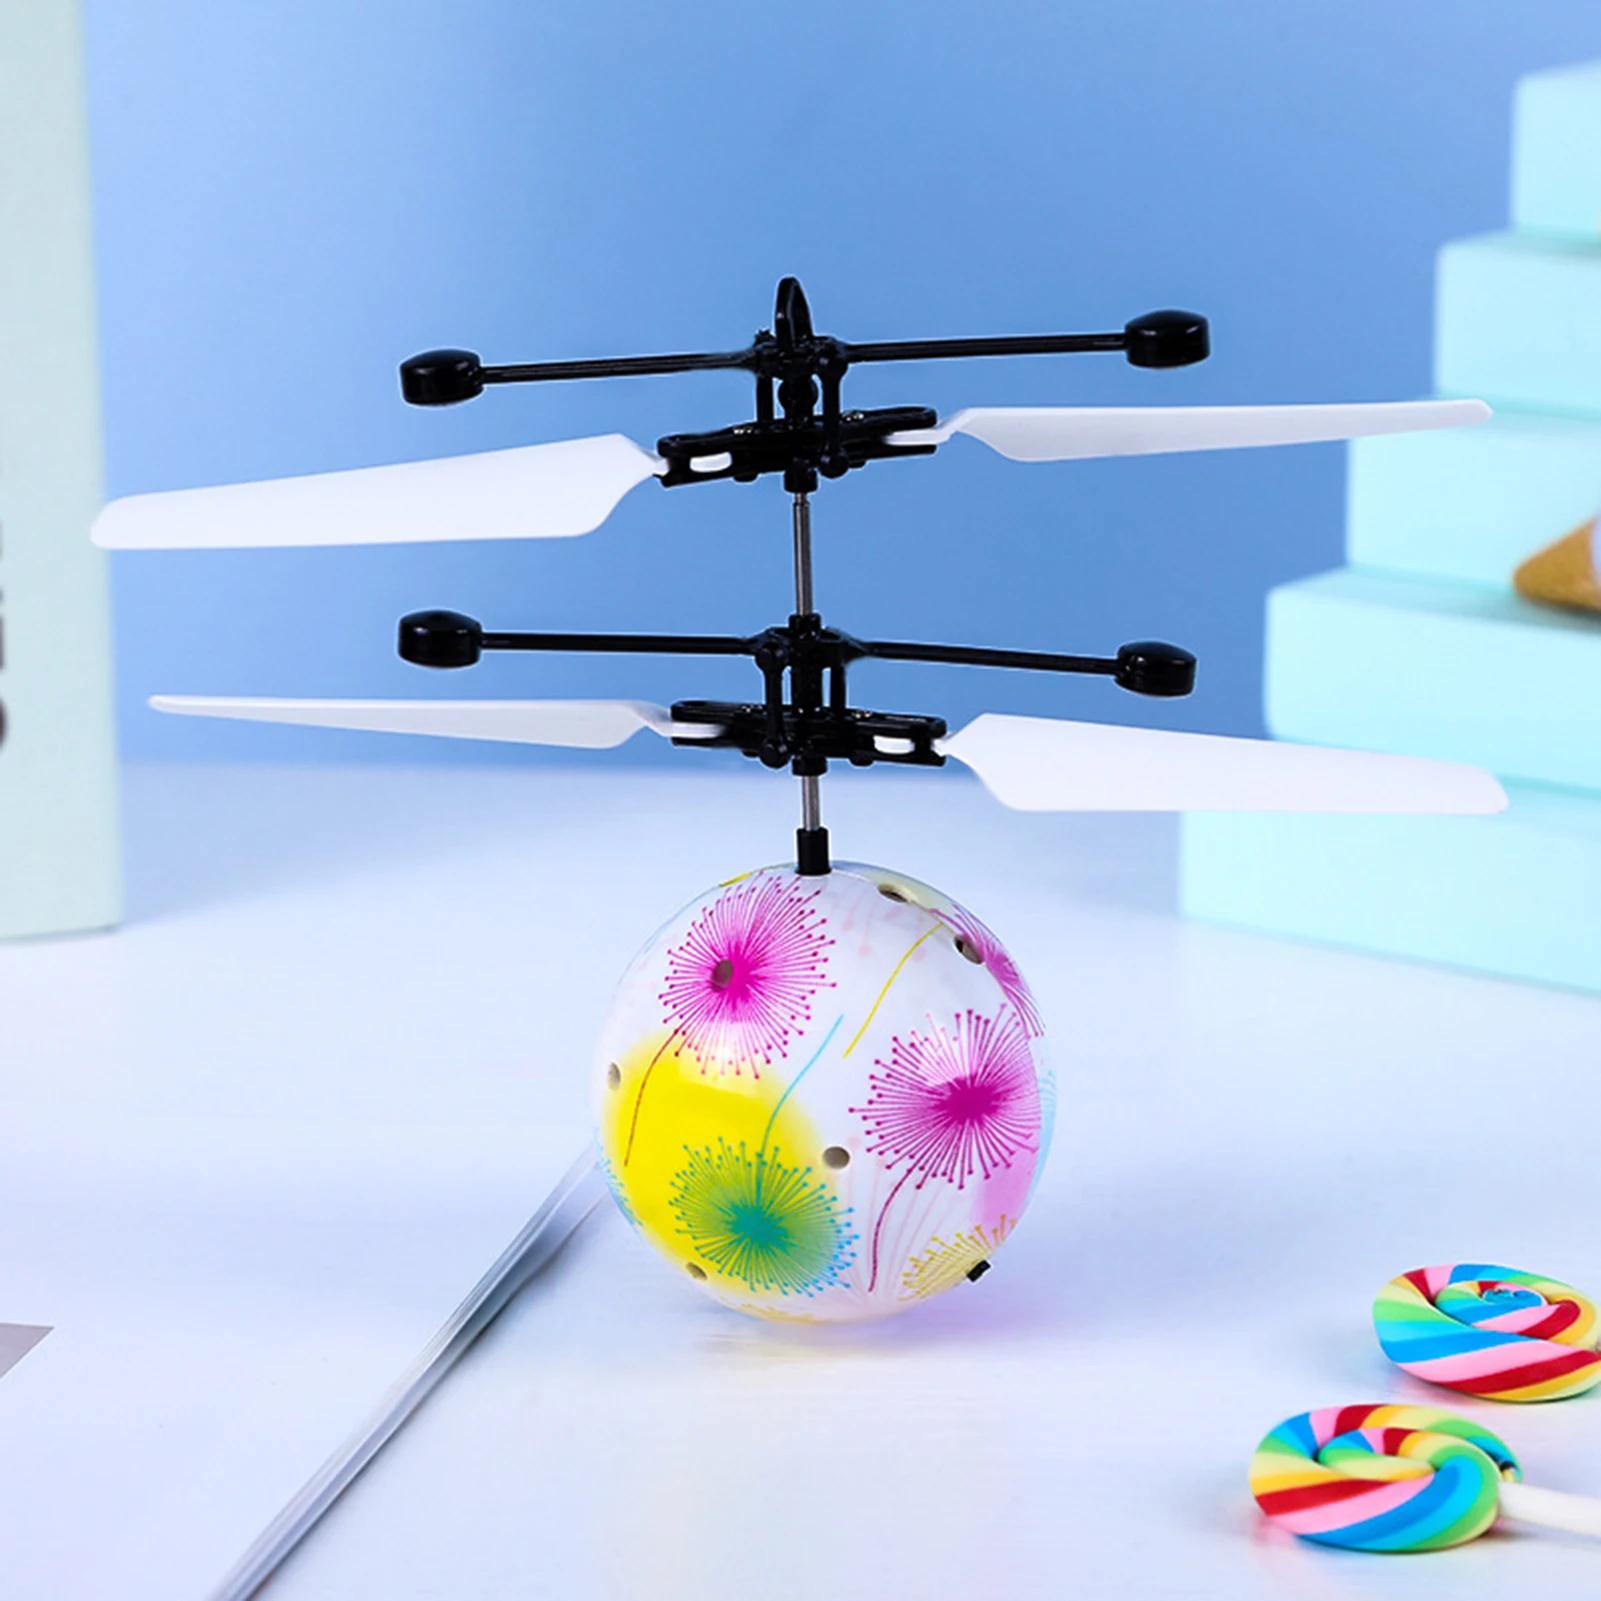 

Летающий шар, радиоуправляемые игрушки для детей, светящиеся мячи, ручные мини-дроны, светящиеся, яркие, с перезаряжаемыми новинками игруше...